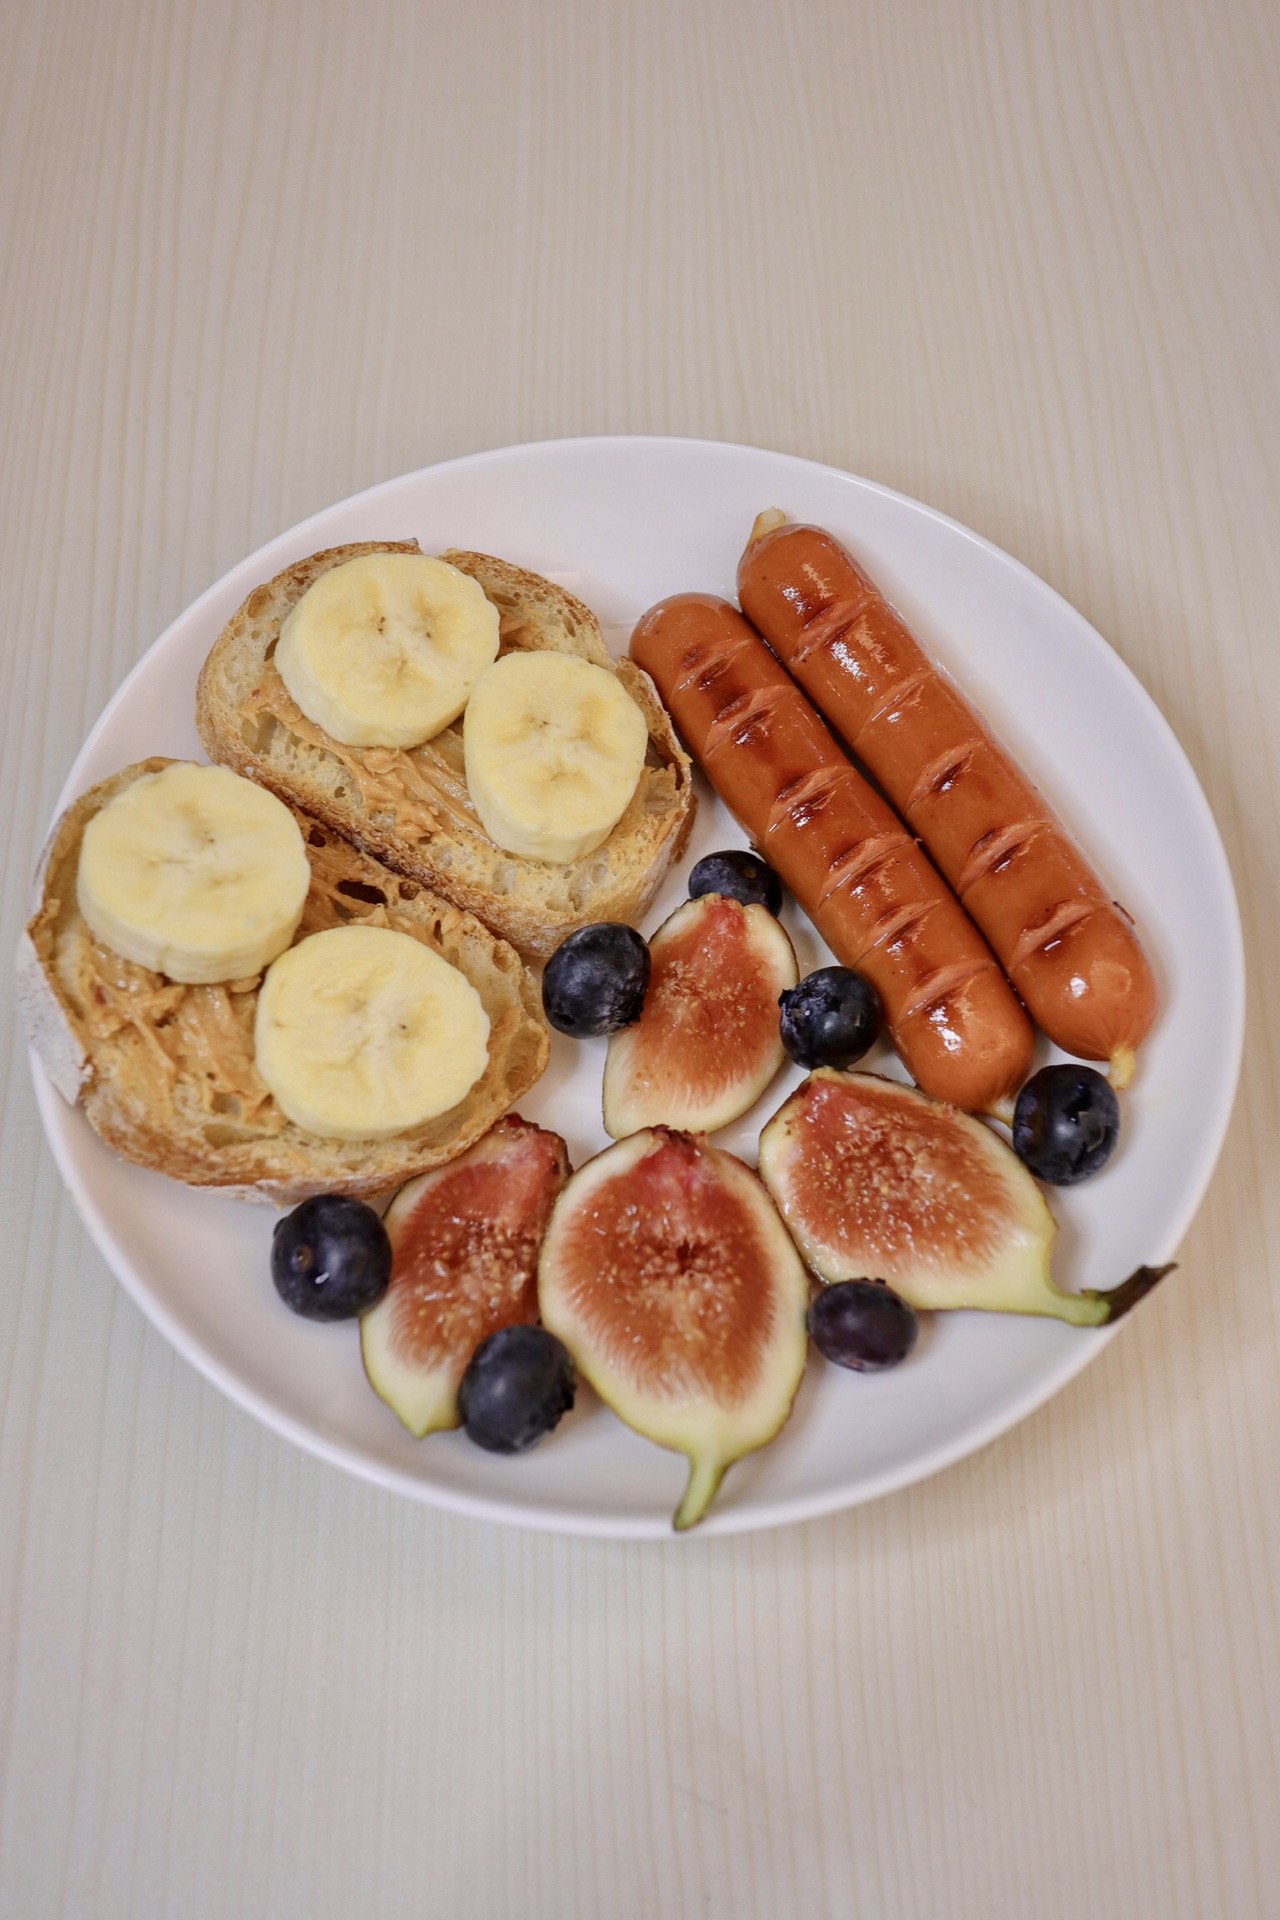 香蕉花生酱开放式法棍早午餐